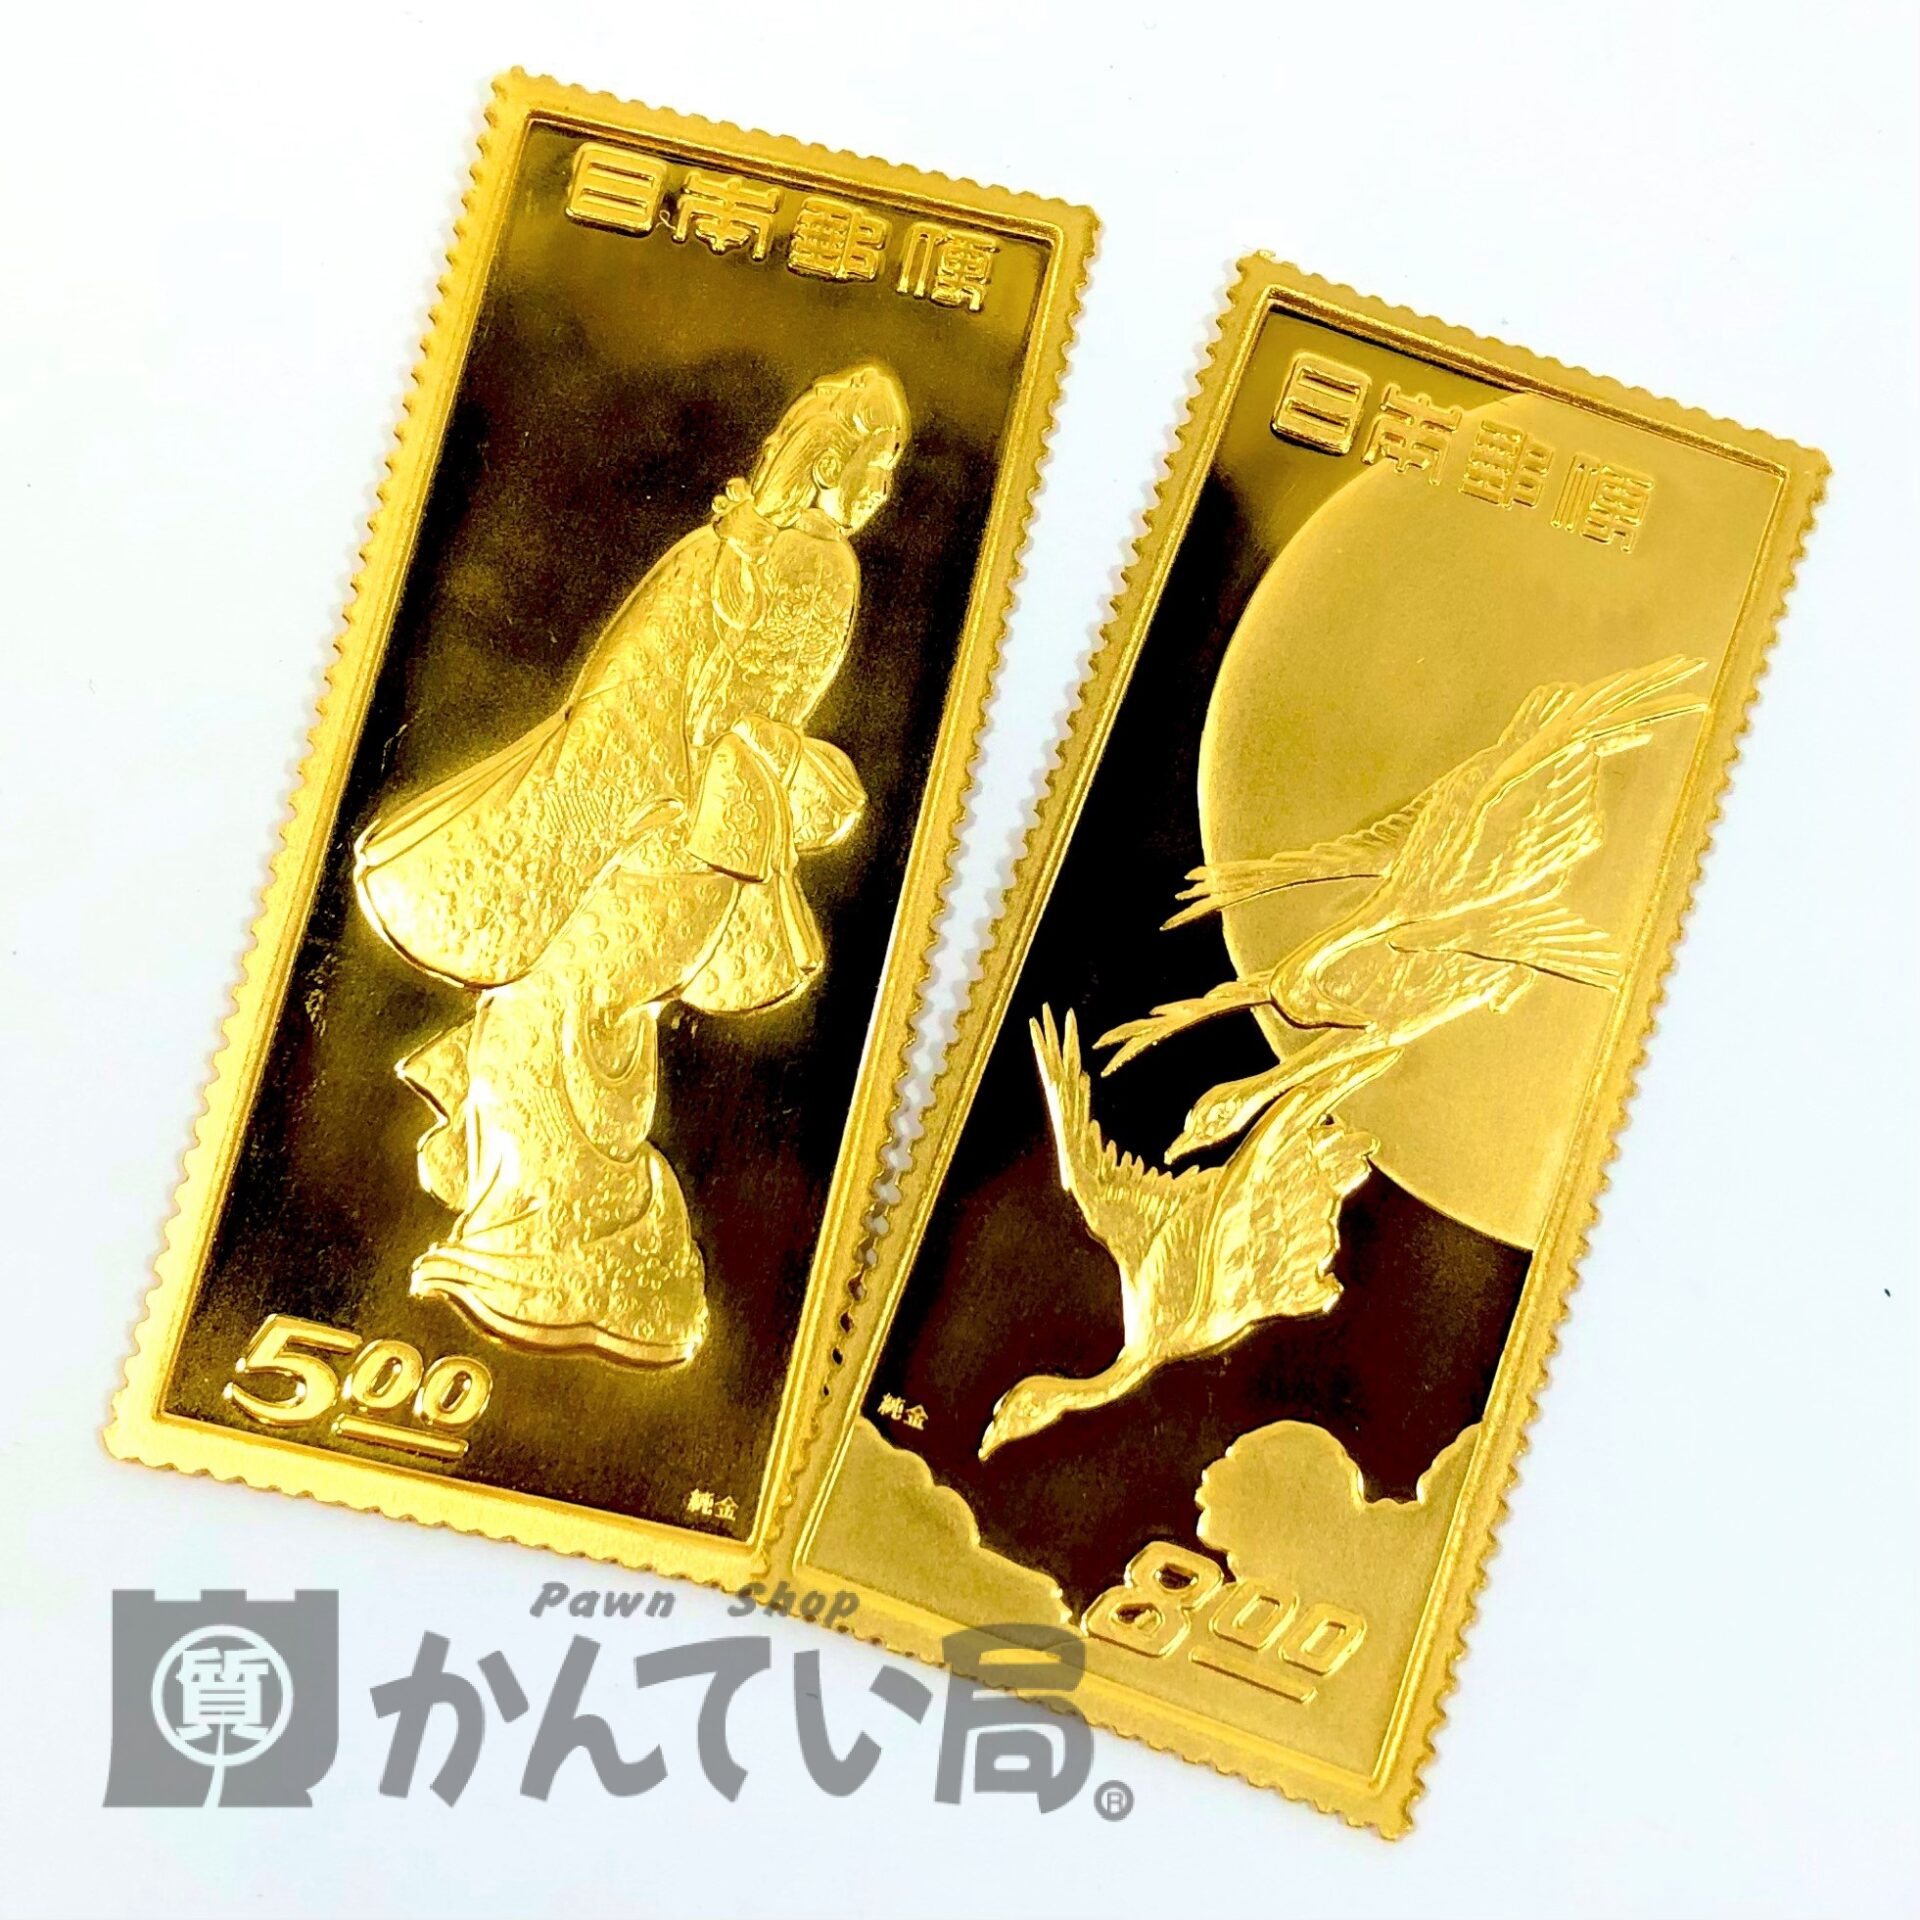 有名な切手『見返り美人』や『月に雁』の模様の純金プレート 切手型